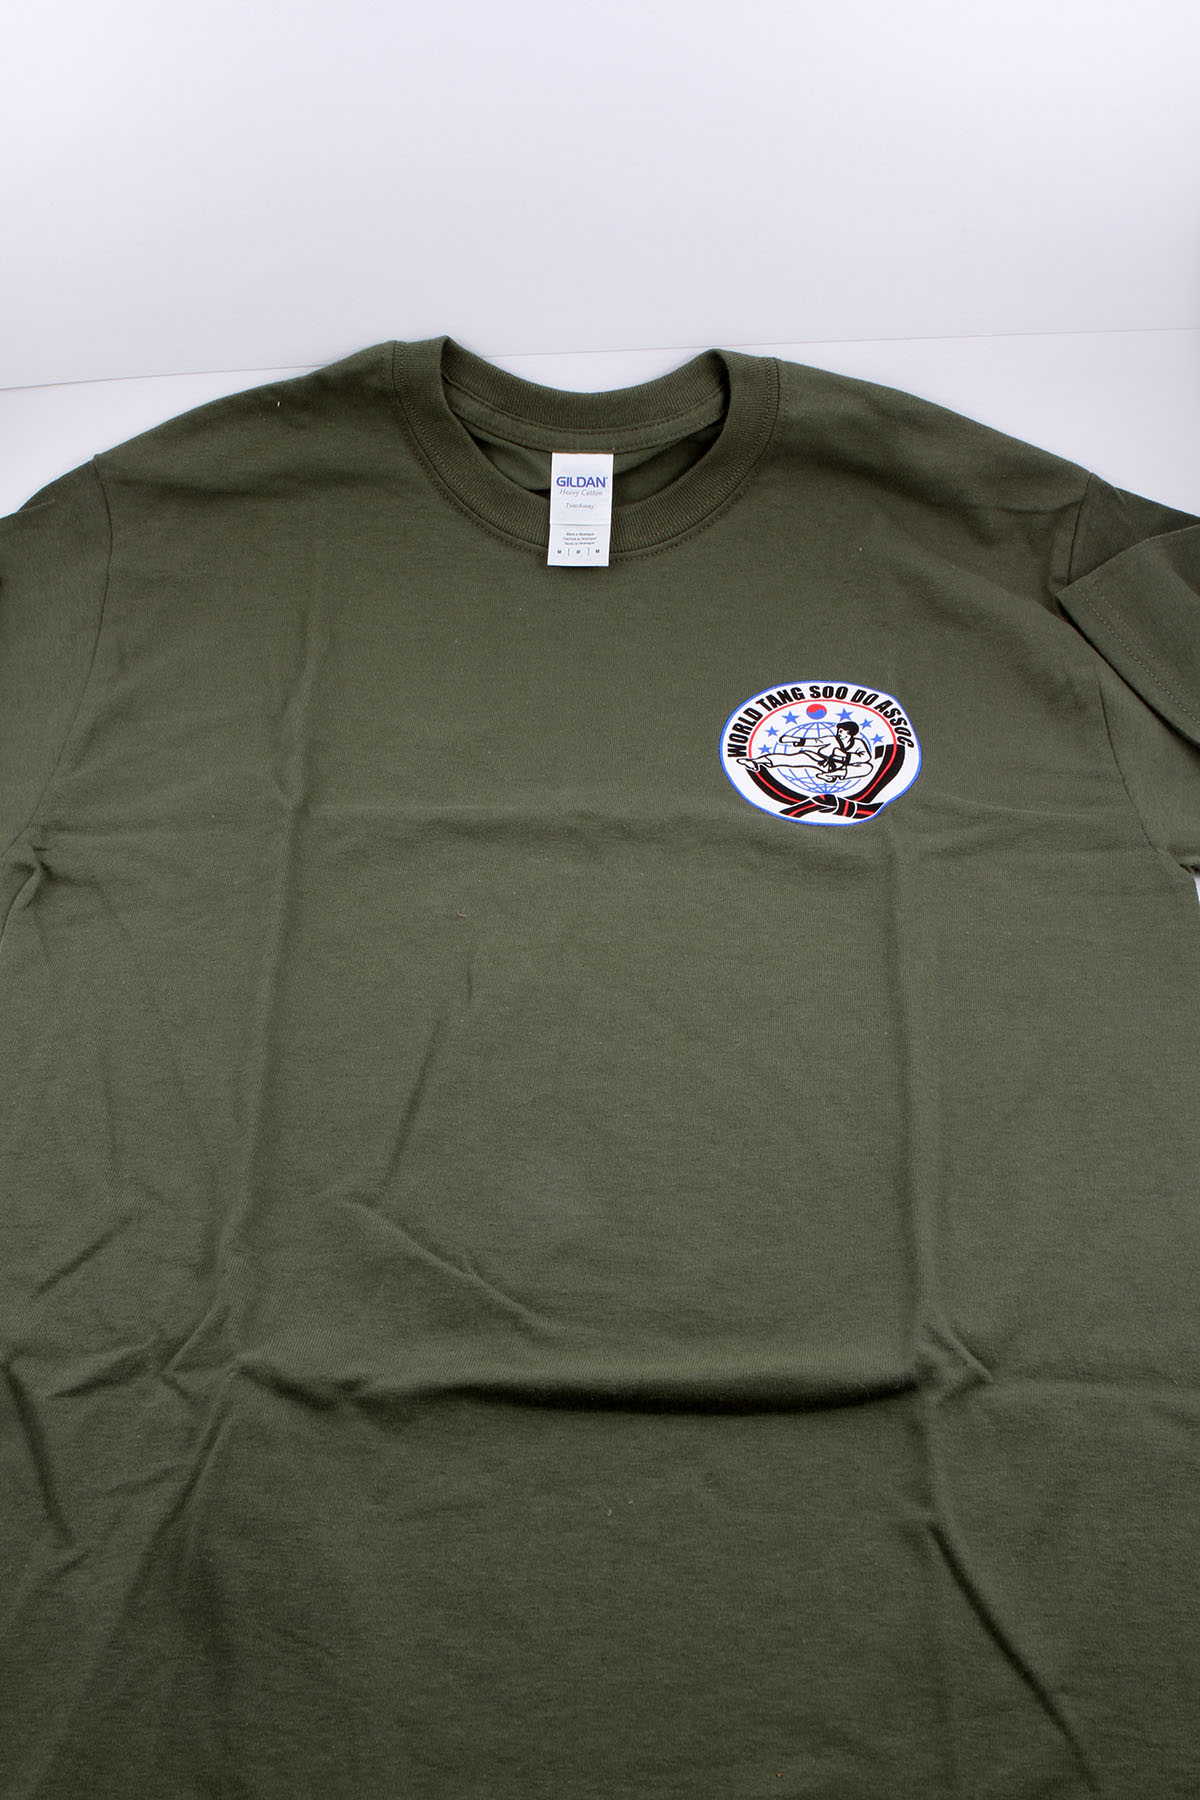 TTSDS T-Shirt (Official) – Texas Tang Soo Do